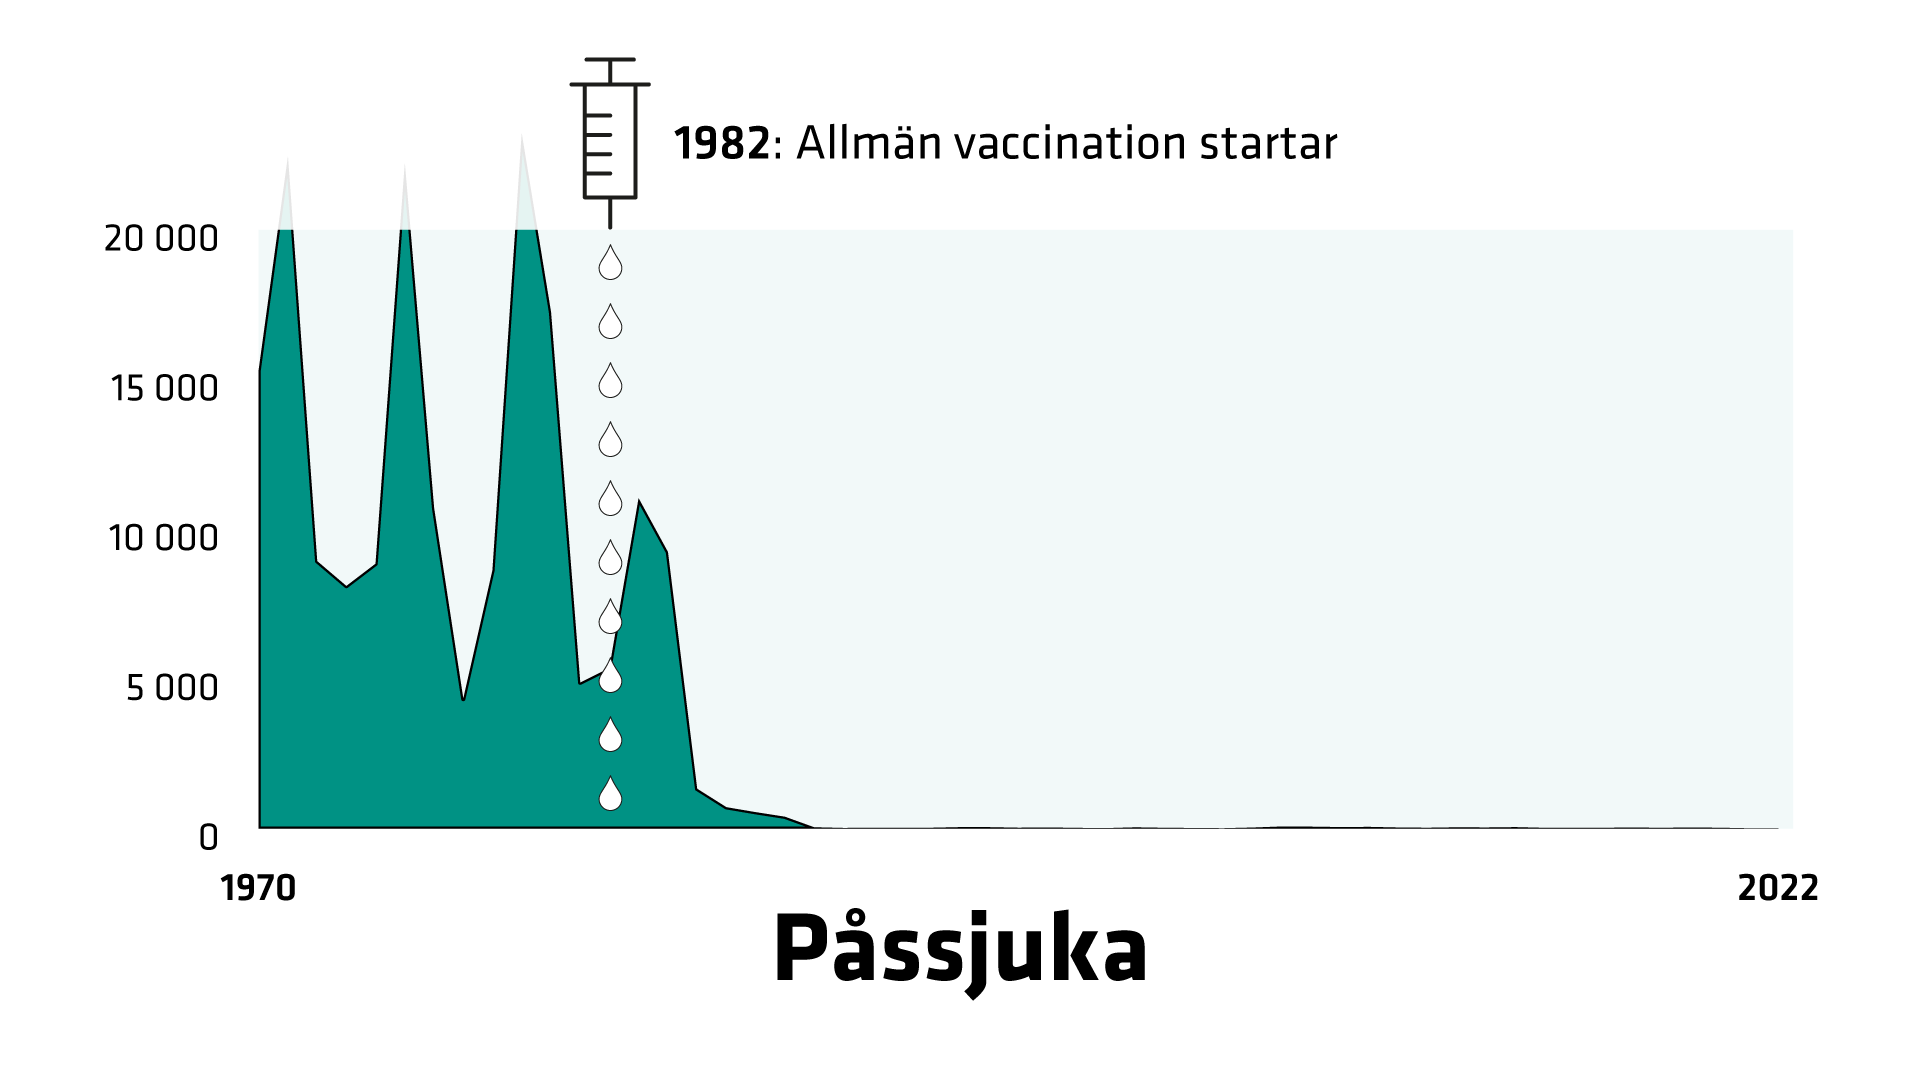 Antal fall i Sverige 1970–2022. 1970 registreras 15 297 fall av påssjuka. 1982 startar allmän vaccination. Sedan sjunker antalet fall fort. 2020 registreras 23 fall.